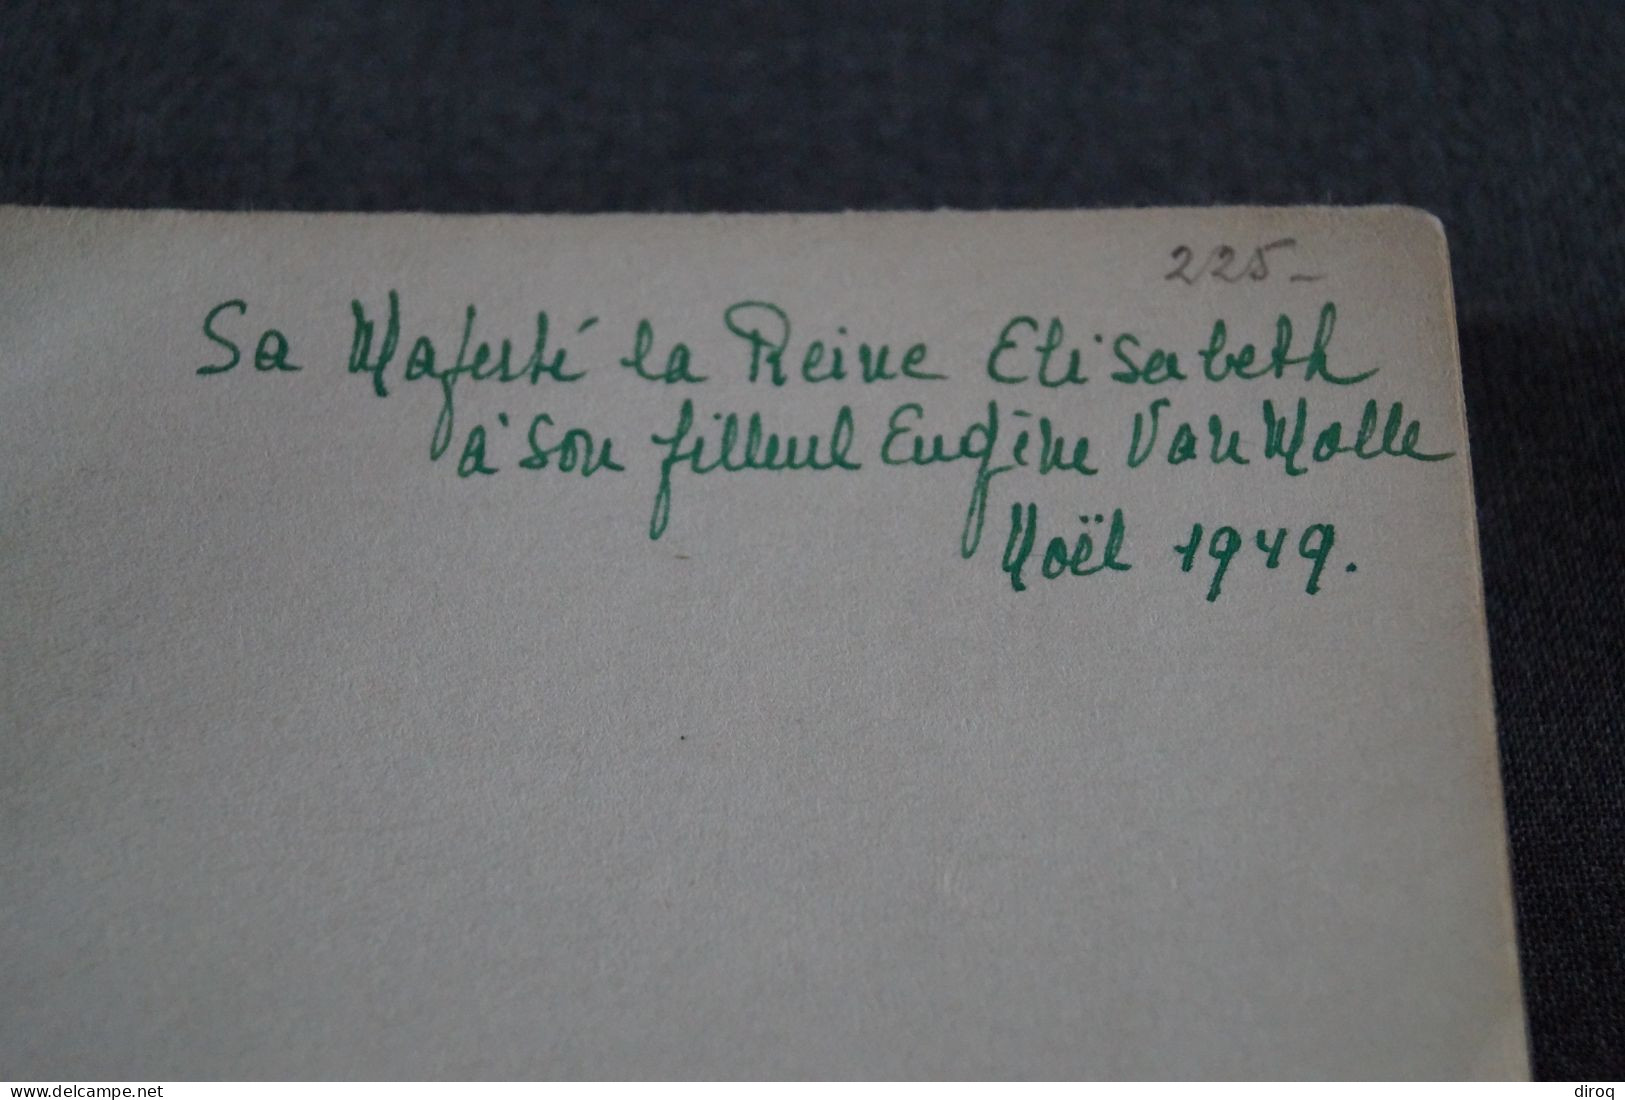 Courrier De La Reine Elisabeth + Livre,David Copperfield,1949 Offert Par La Reine,Documents Et Cachet De Cire,23,5/16 Cm - Familias Reales